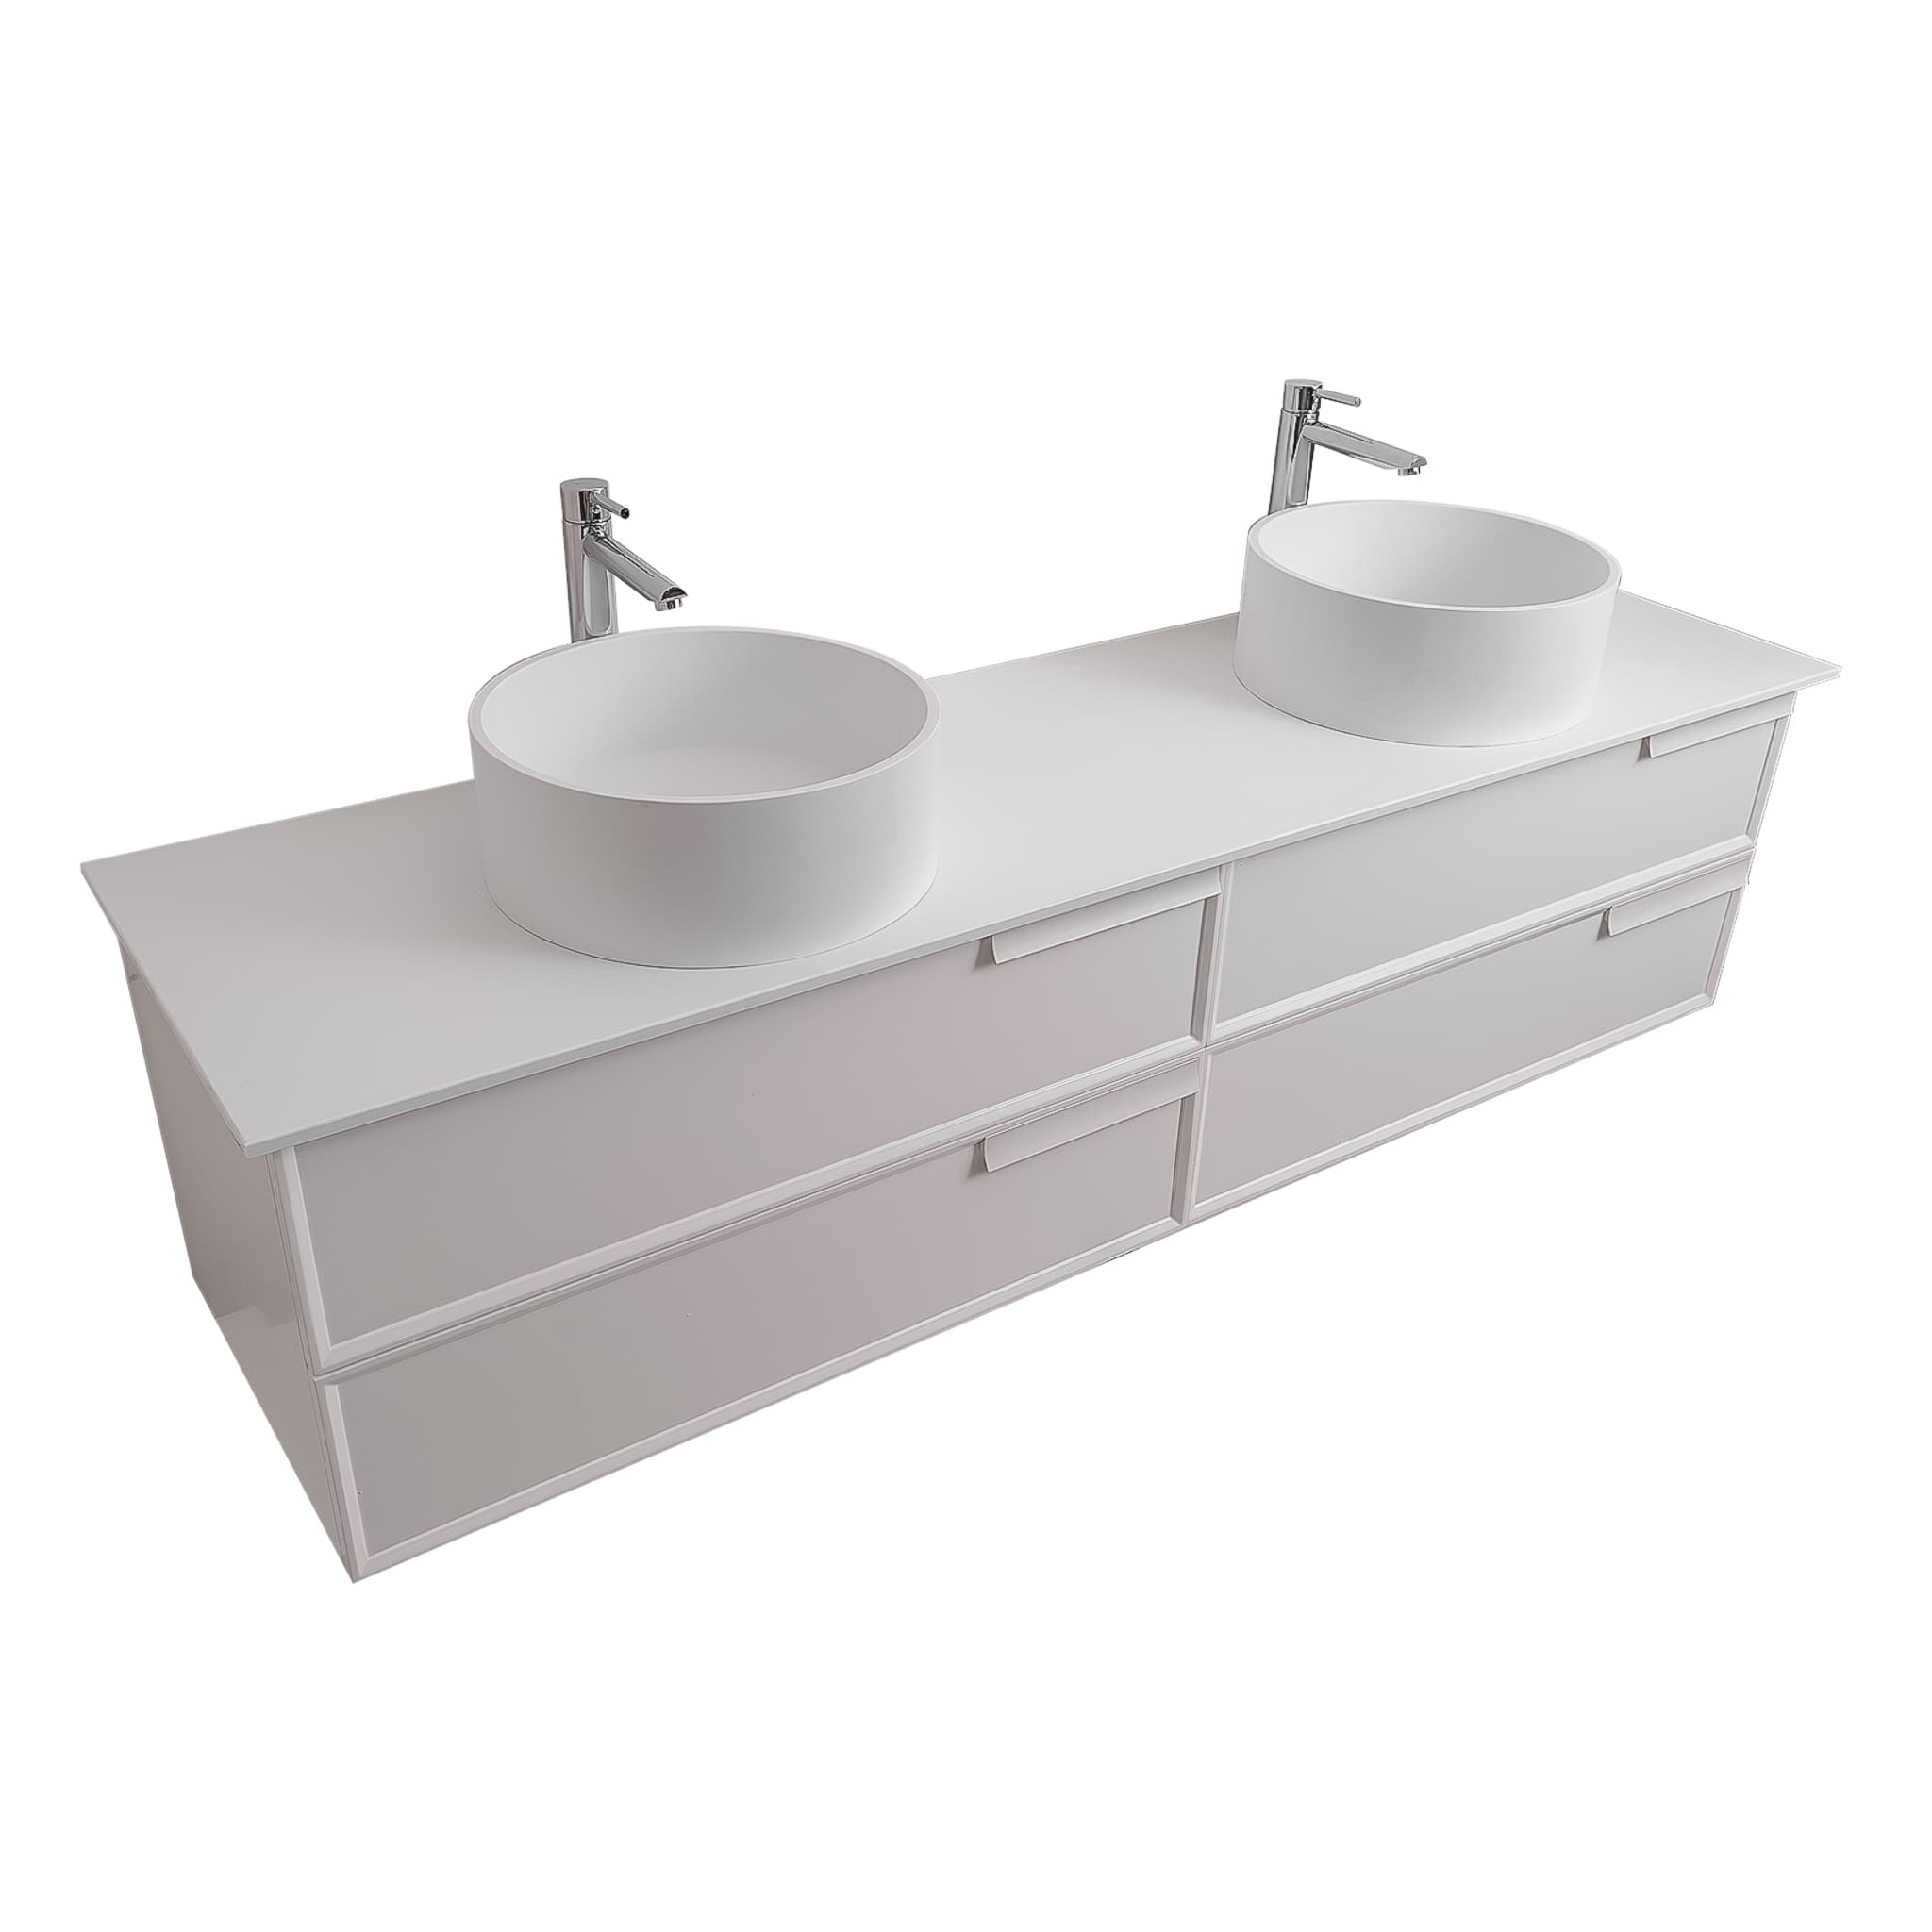 Garda 63 Matte White Cabinet, Solid Surface Flat White Counter and Two Round Solid Surface White Basin 1386, Wall Mounted Modern Vanity Set